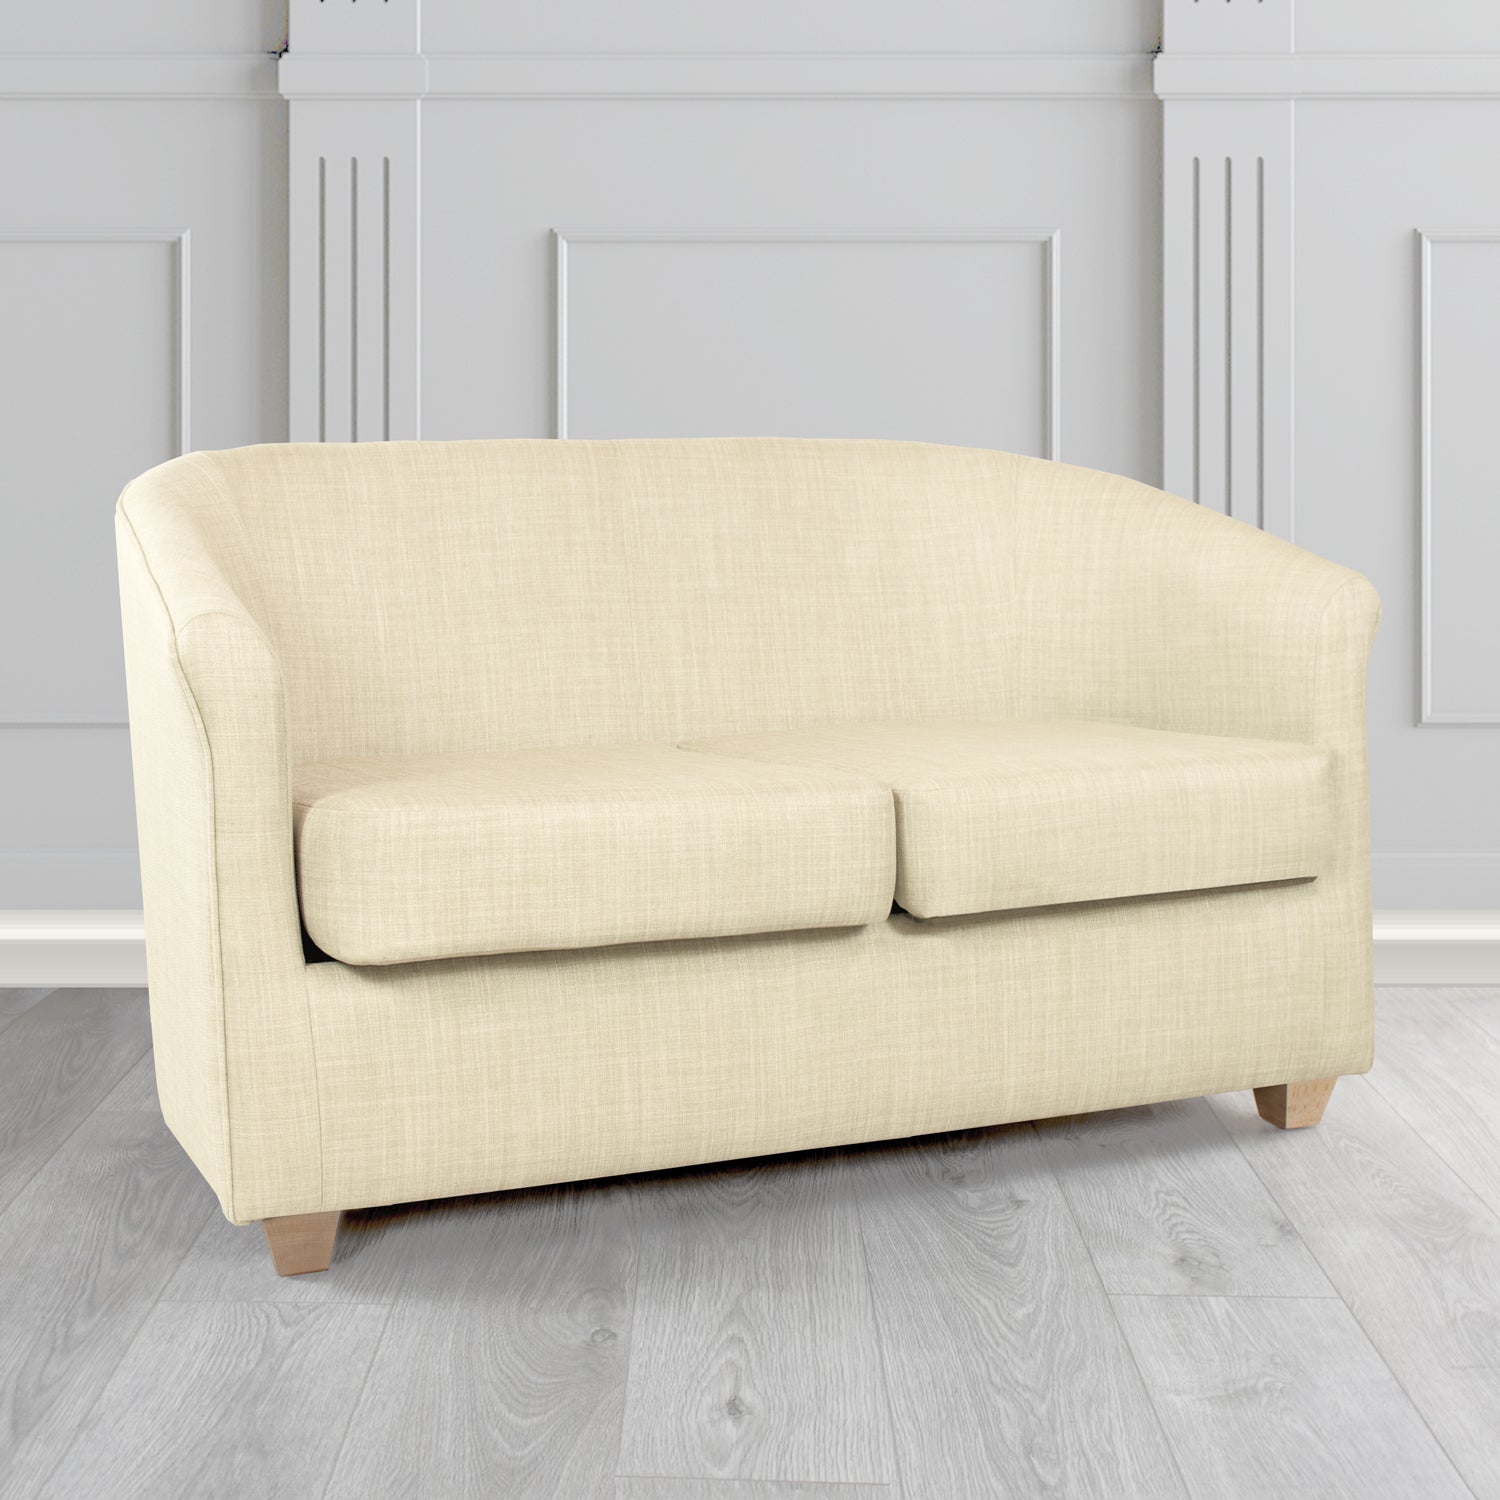 Cannes Charles Cream Linen Fabric 2 Seater Tub Sofa - The Tub Chair Shop